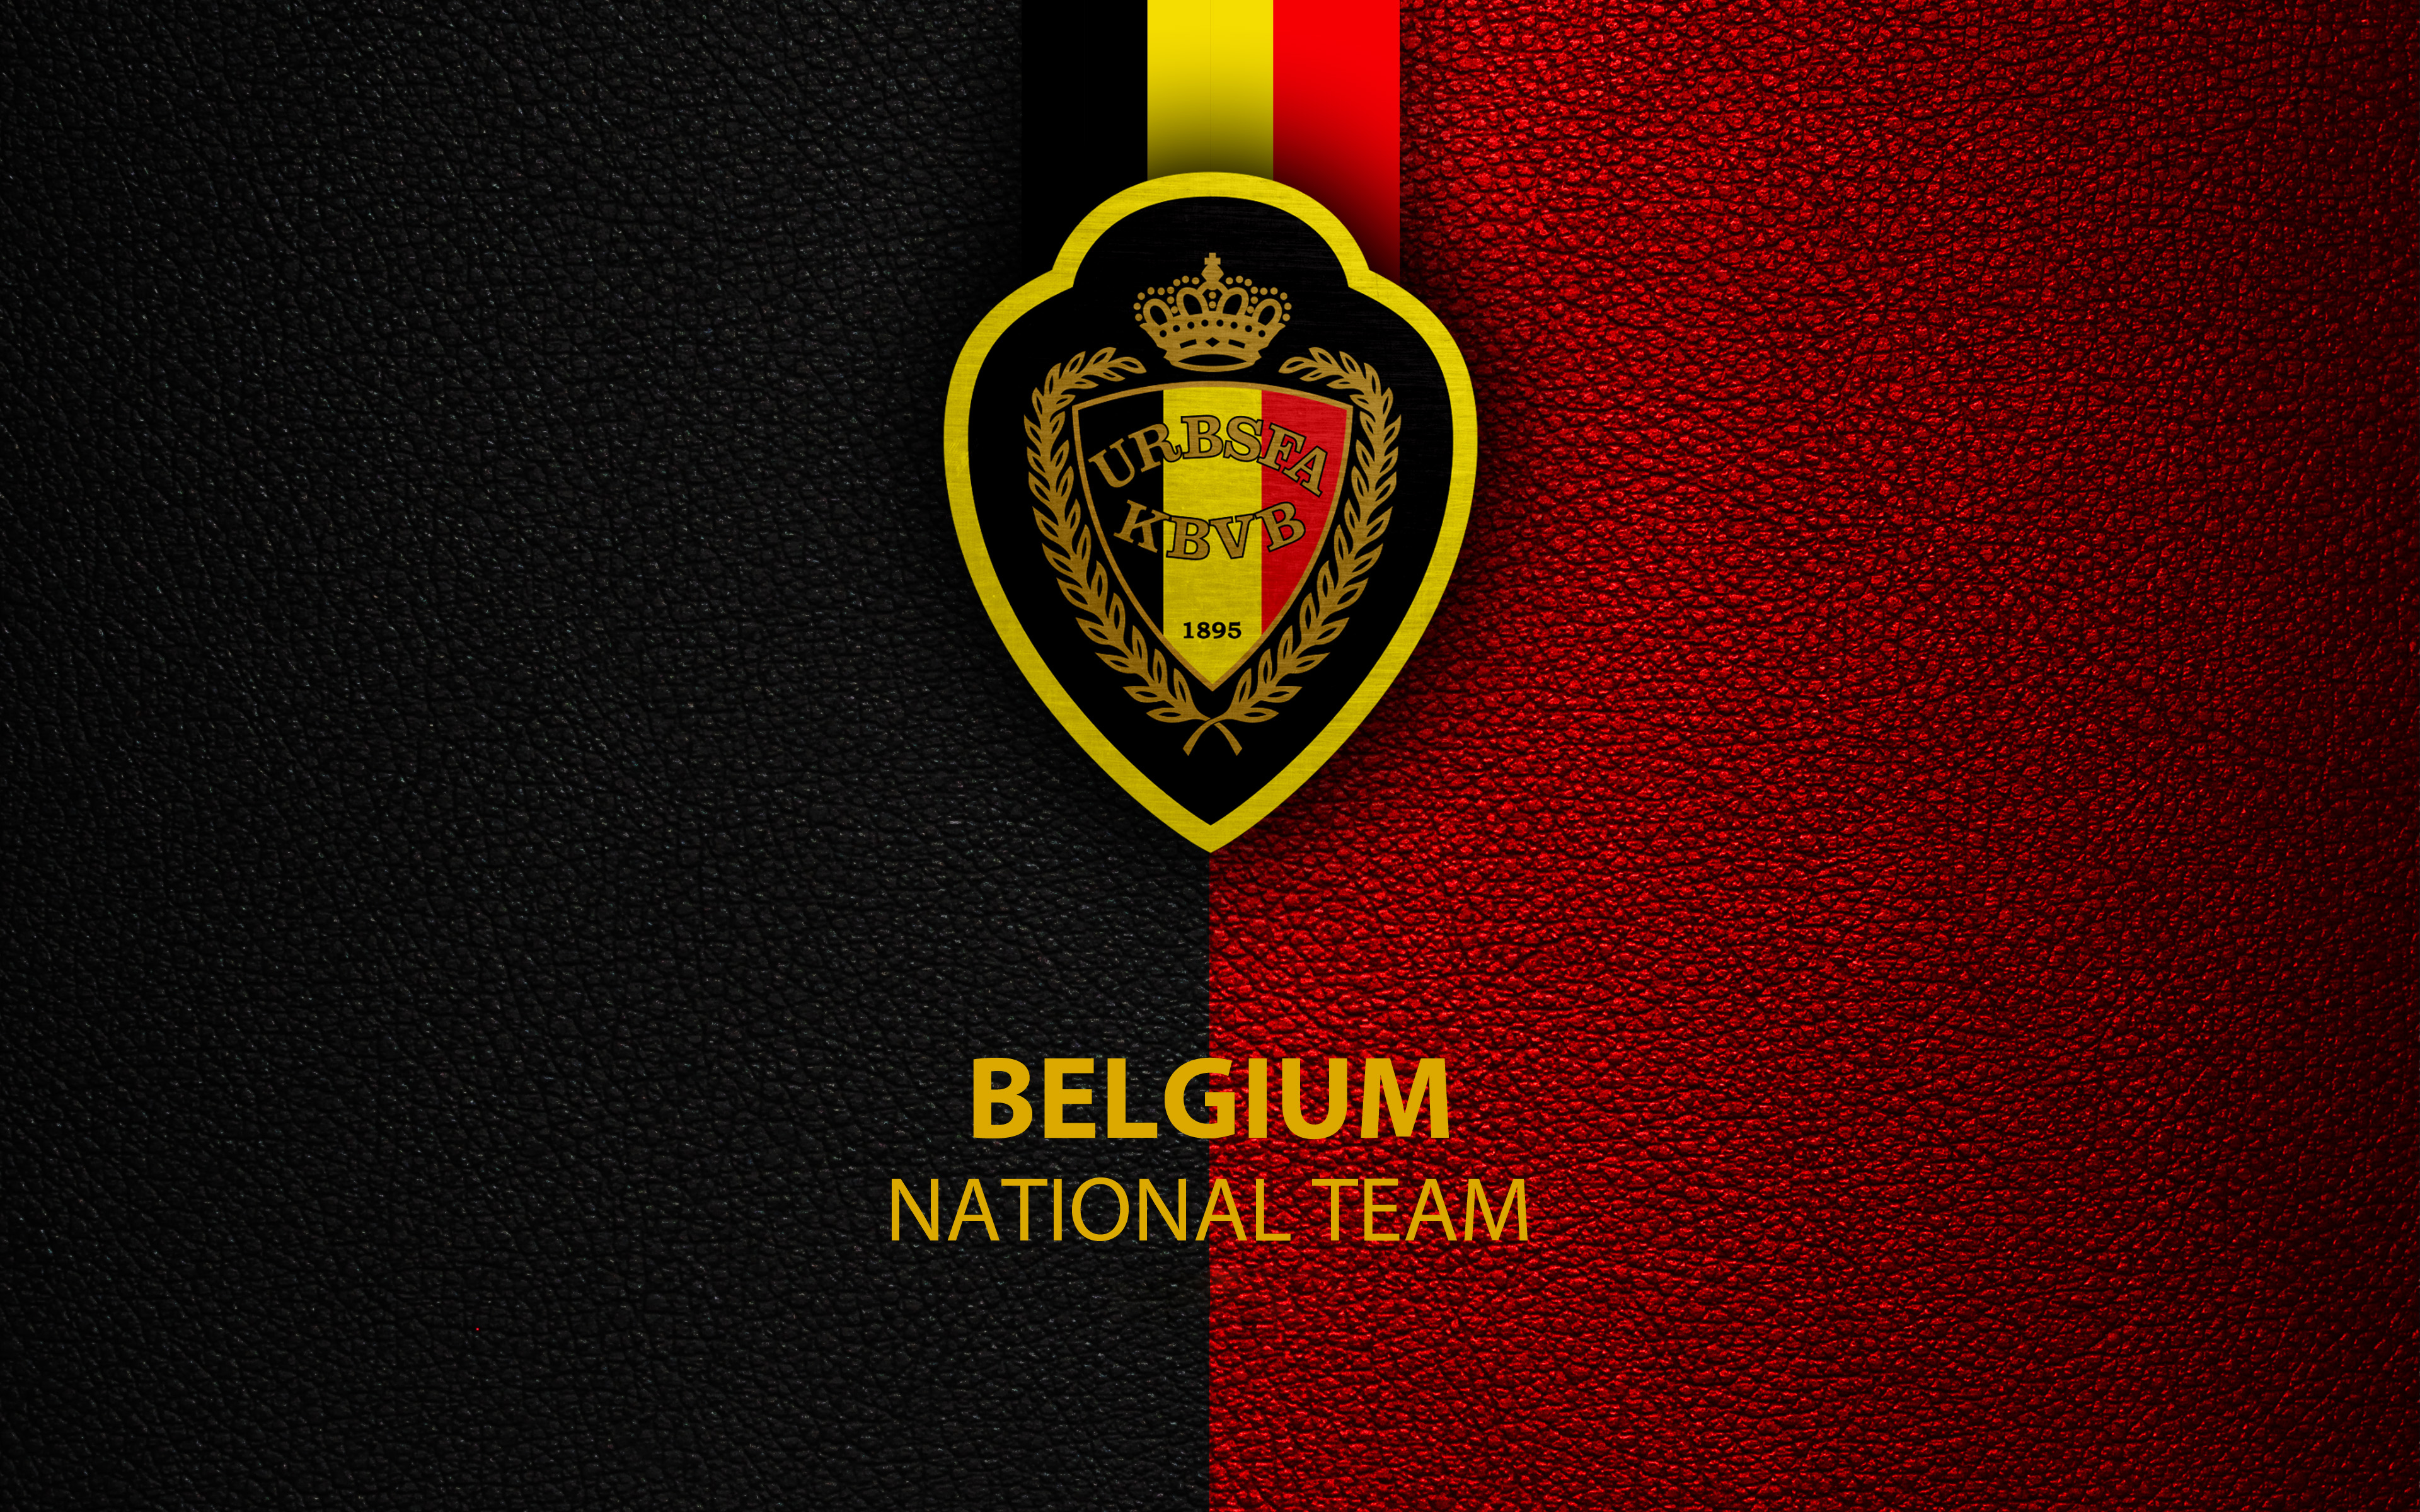 Belgium National Football Team 4k Ultra HD Wallpaper